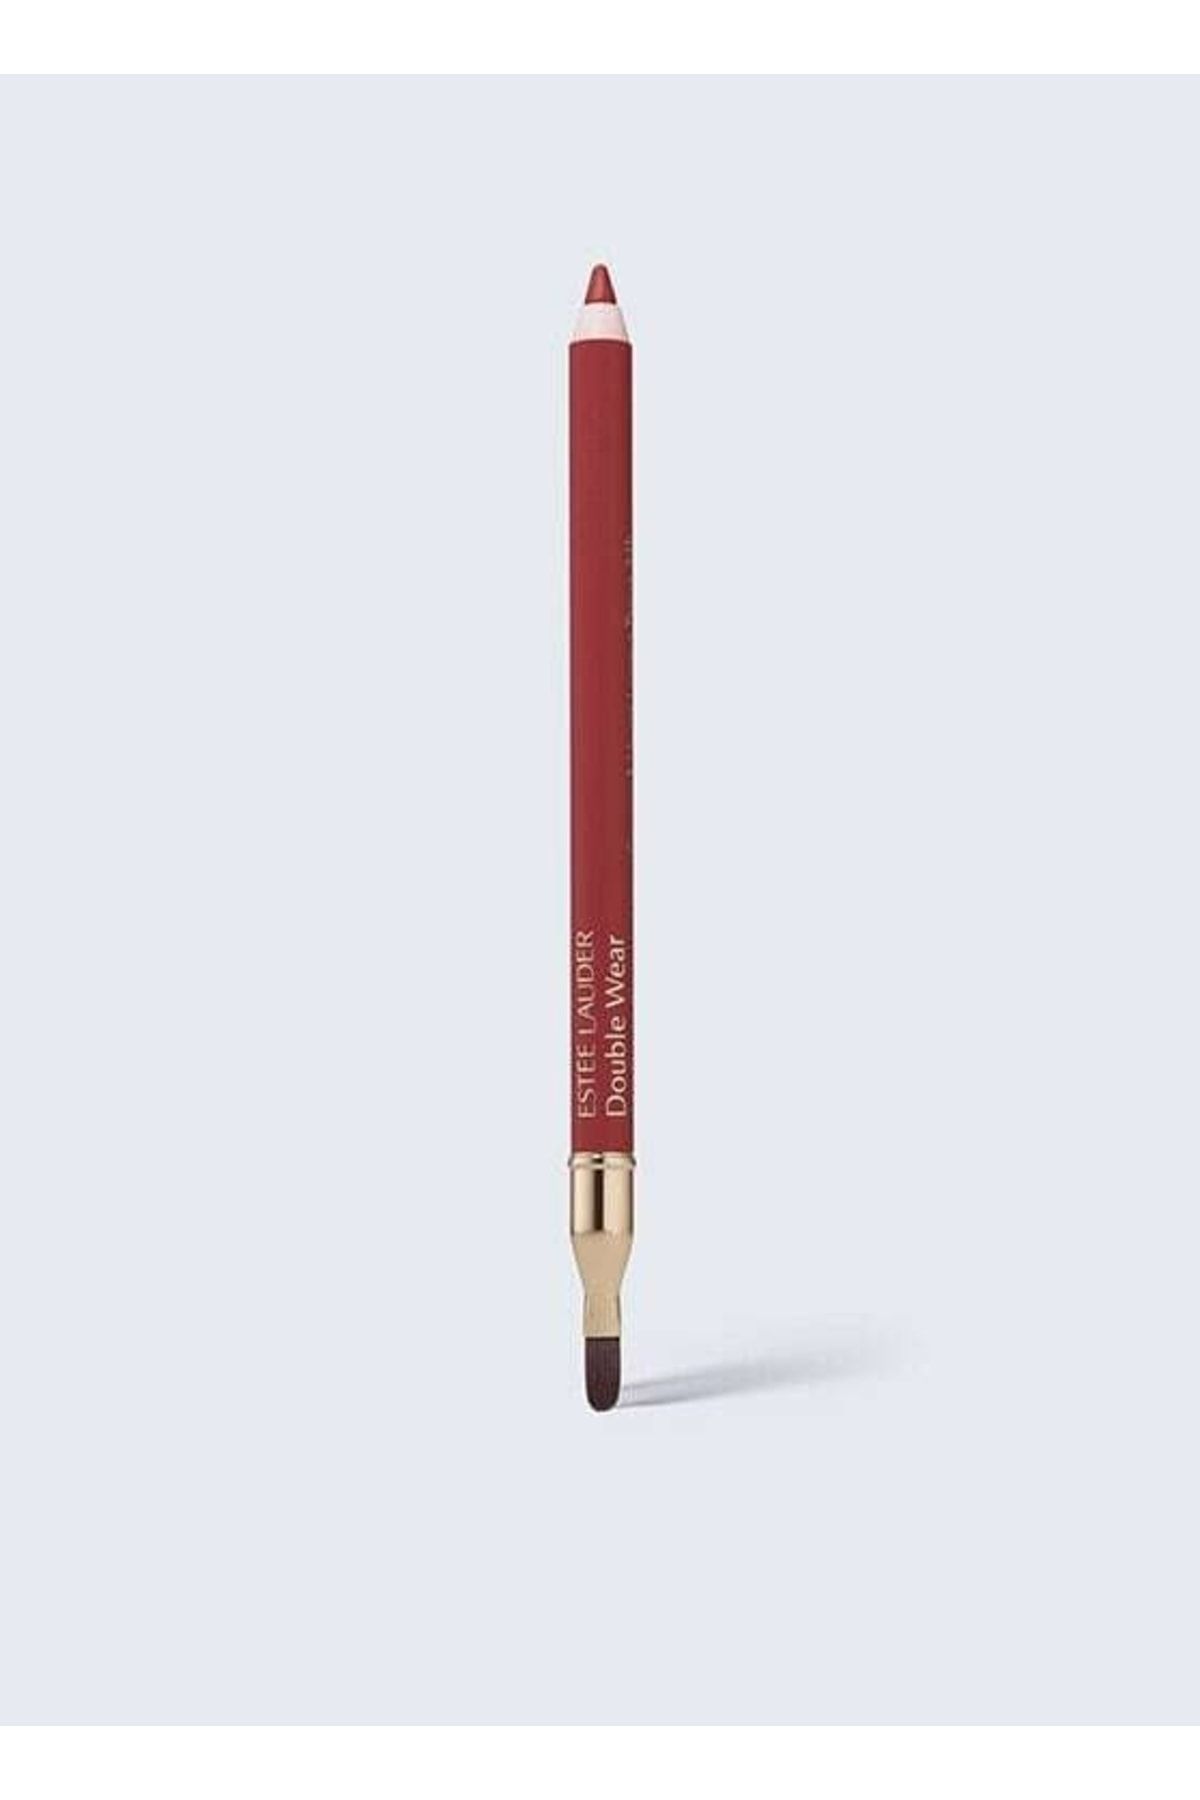 Estee Lauder Double Wear 24H Stay-in-Place 24 Saat Kalıcı Dudak Kalemi 1.2 gr (Jojoba Yağı) Renk: 014 Rose